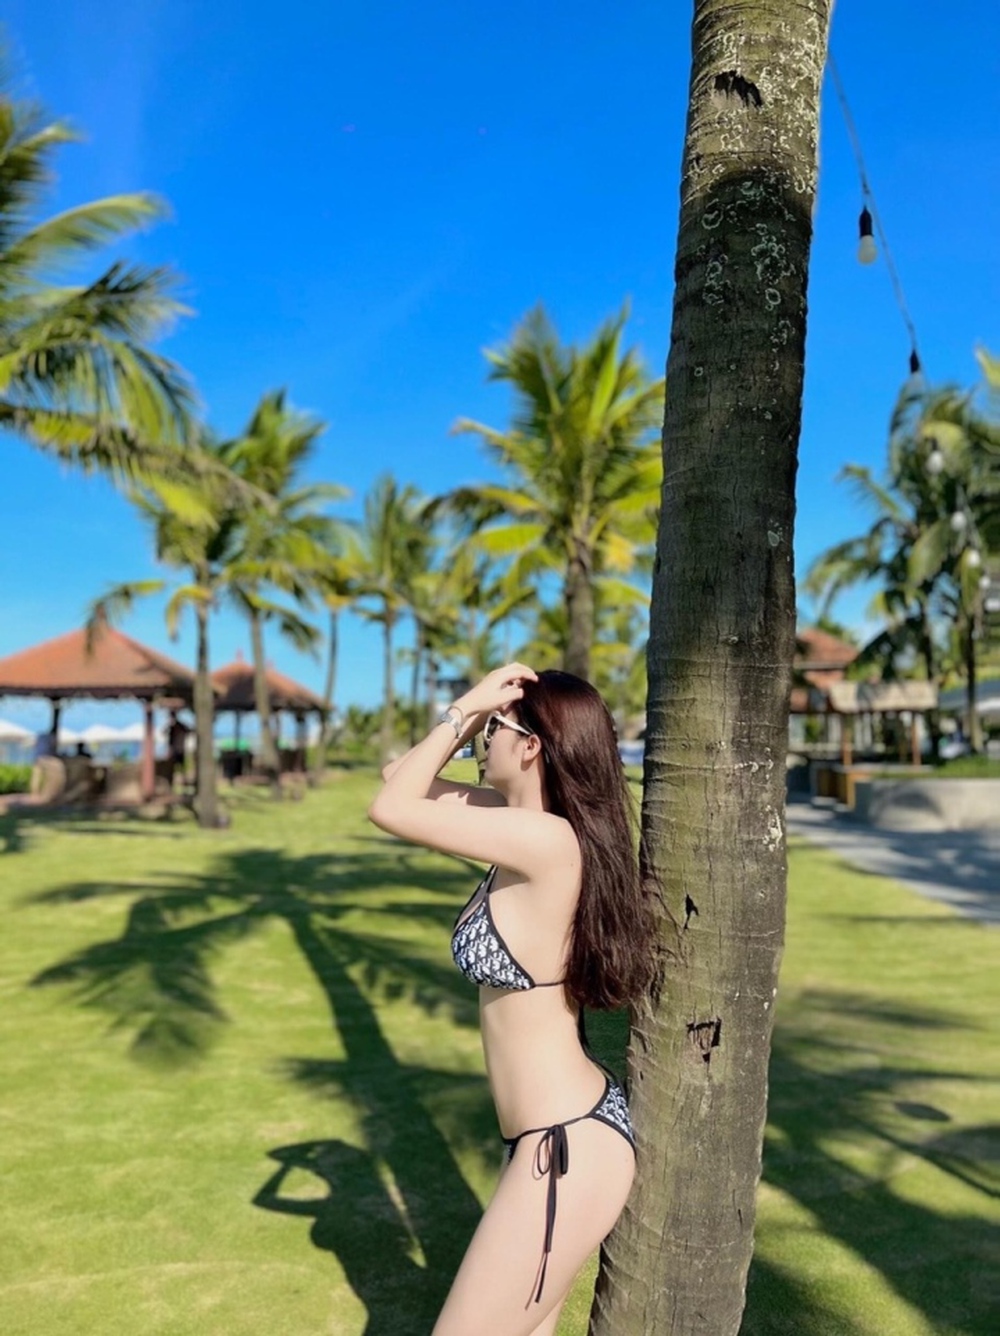 Nữ tuyển thủ Việt Nam tung ảnh bikini quyến rũ gây sốt mạng xã hội - Ảnh 2.